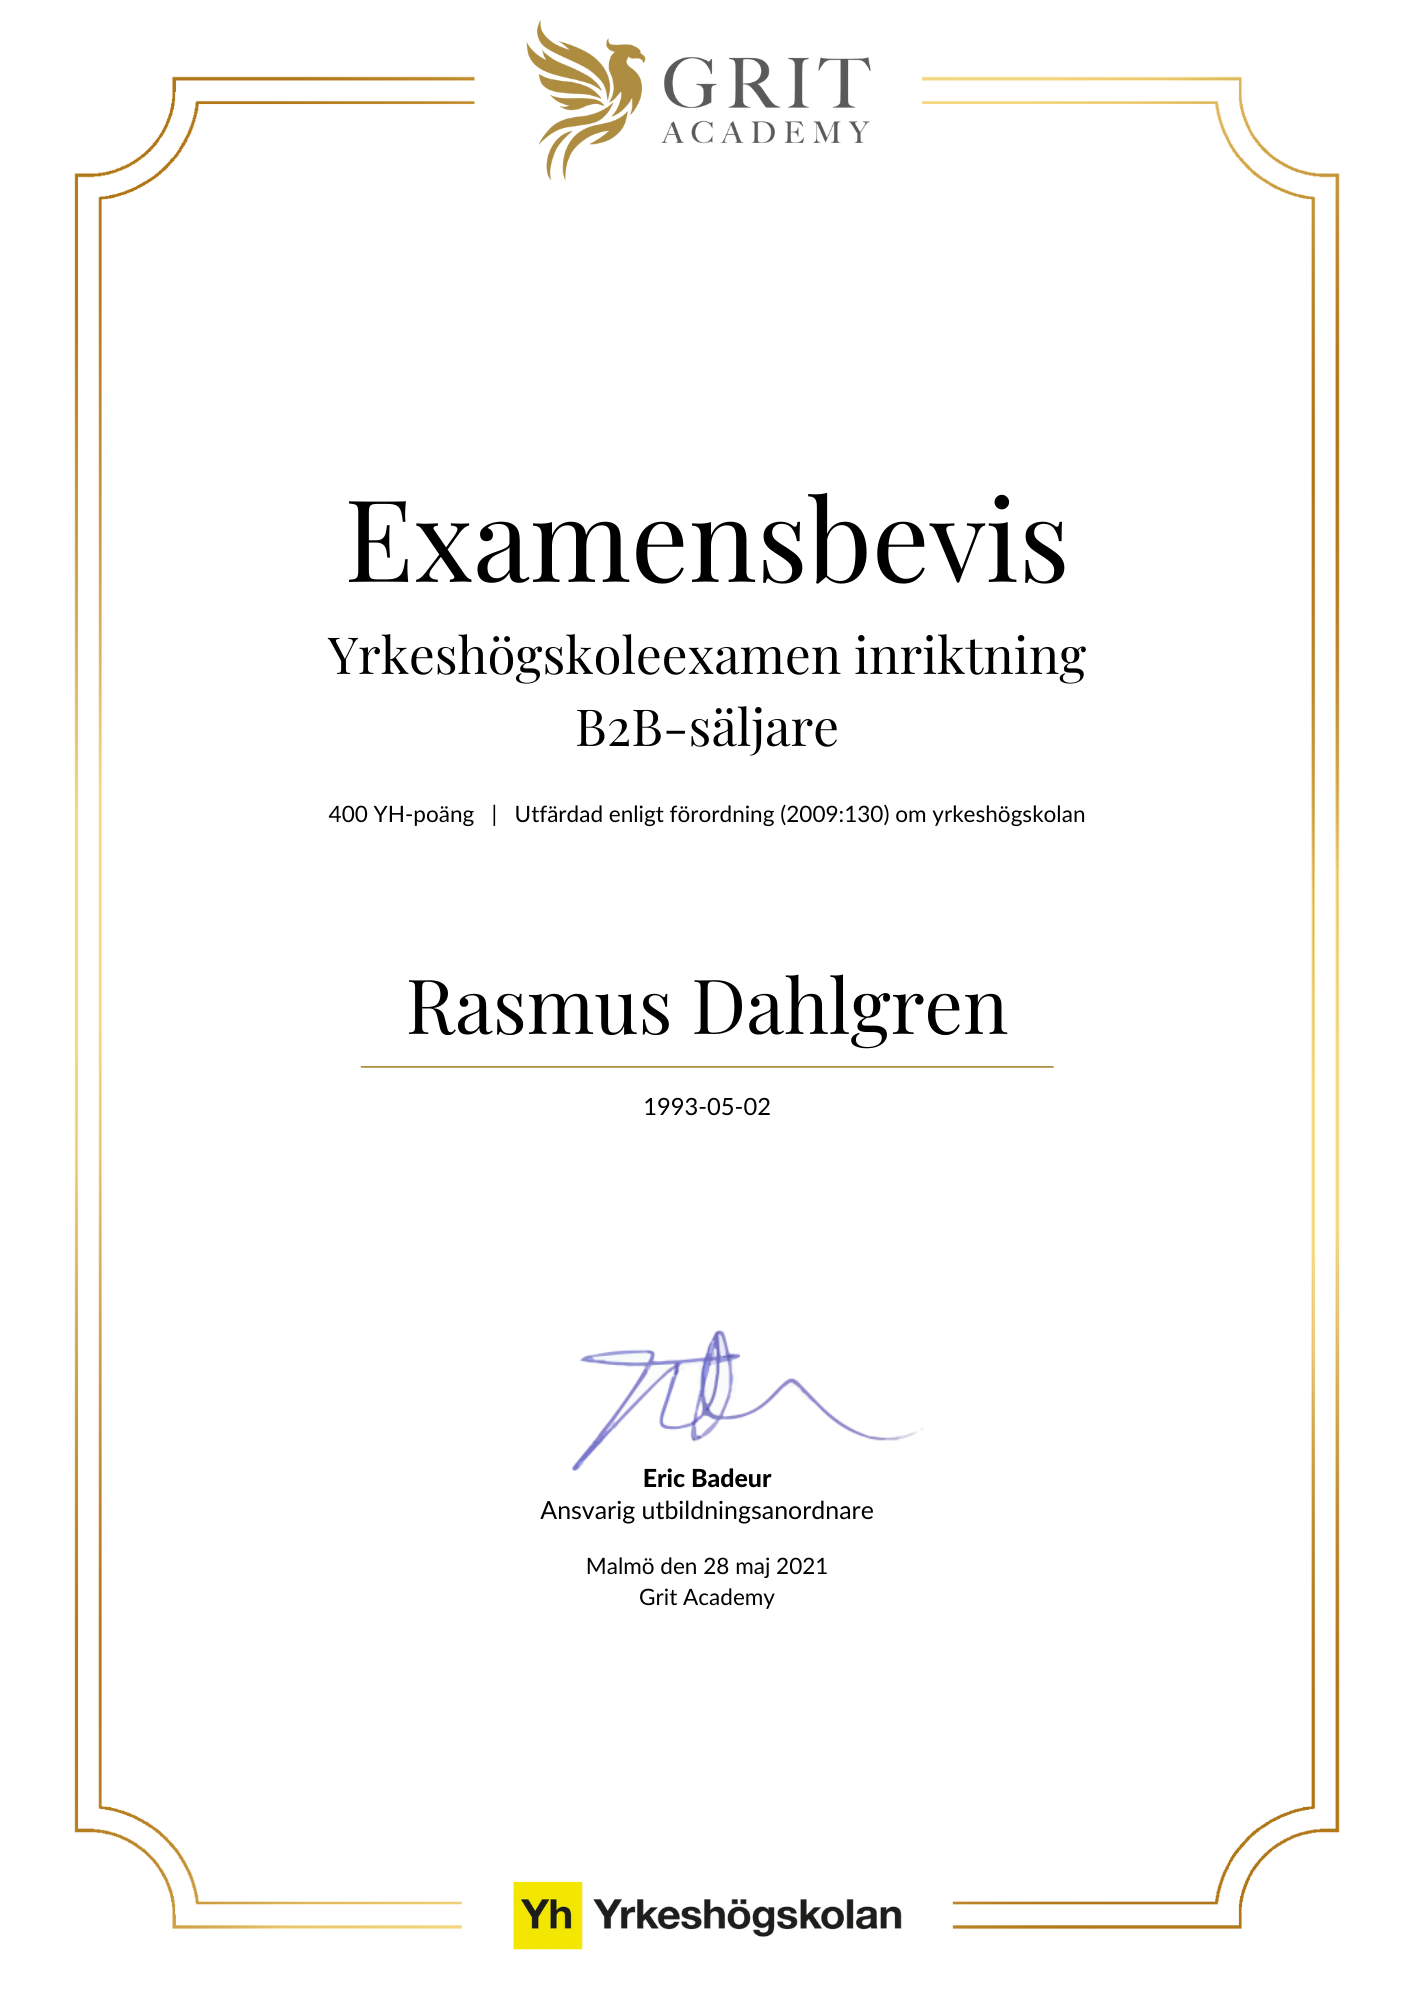 Examensbevis Rasmus Dahlgren - 1